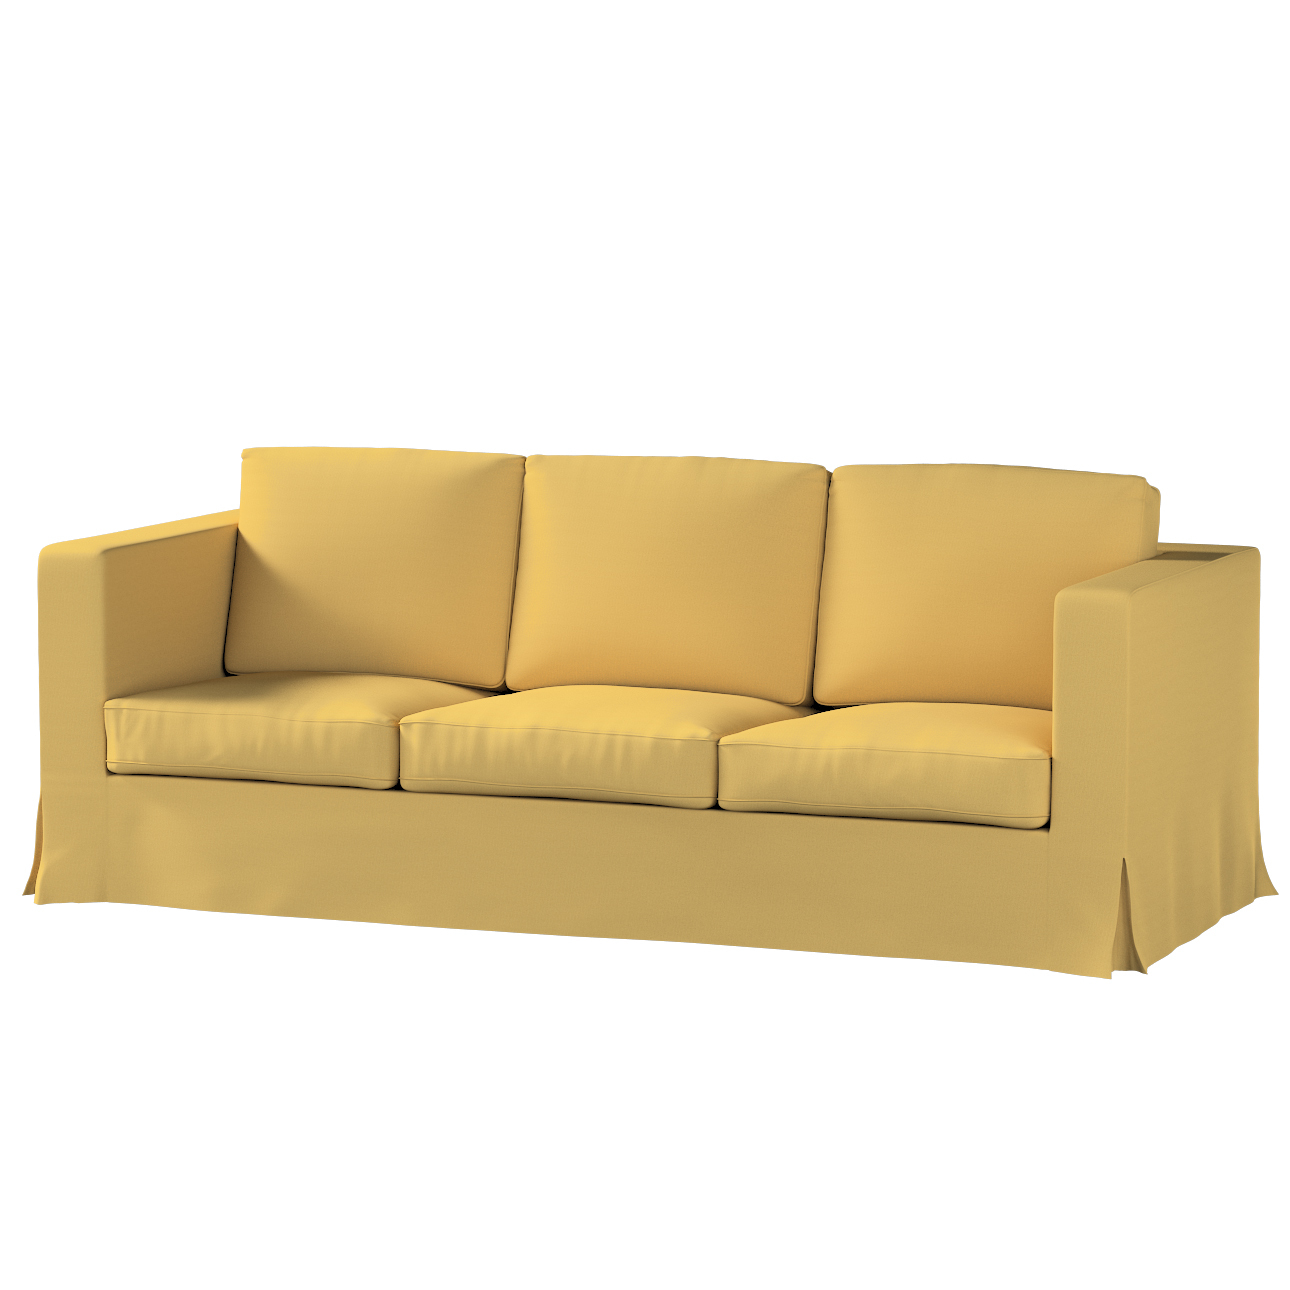 Bezug für Karlanda 3-Sitzer Sofa nicht ausklappbar, lang, chiffongelb, Bezu günstig online kaufen